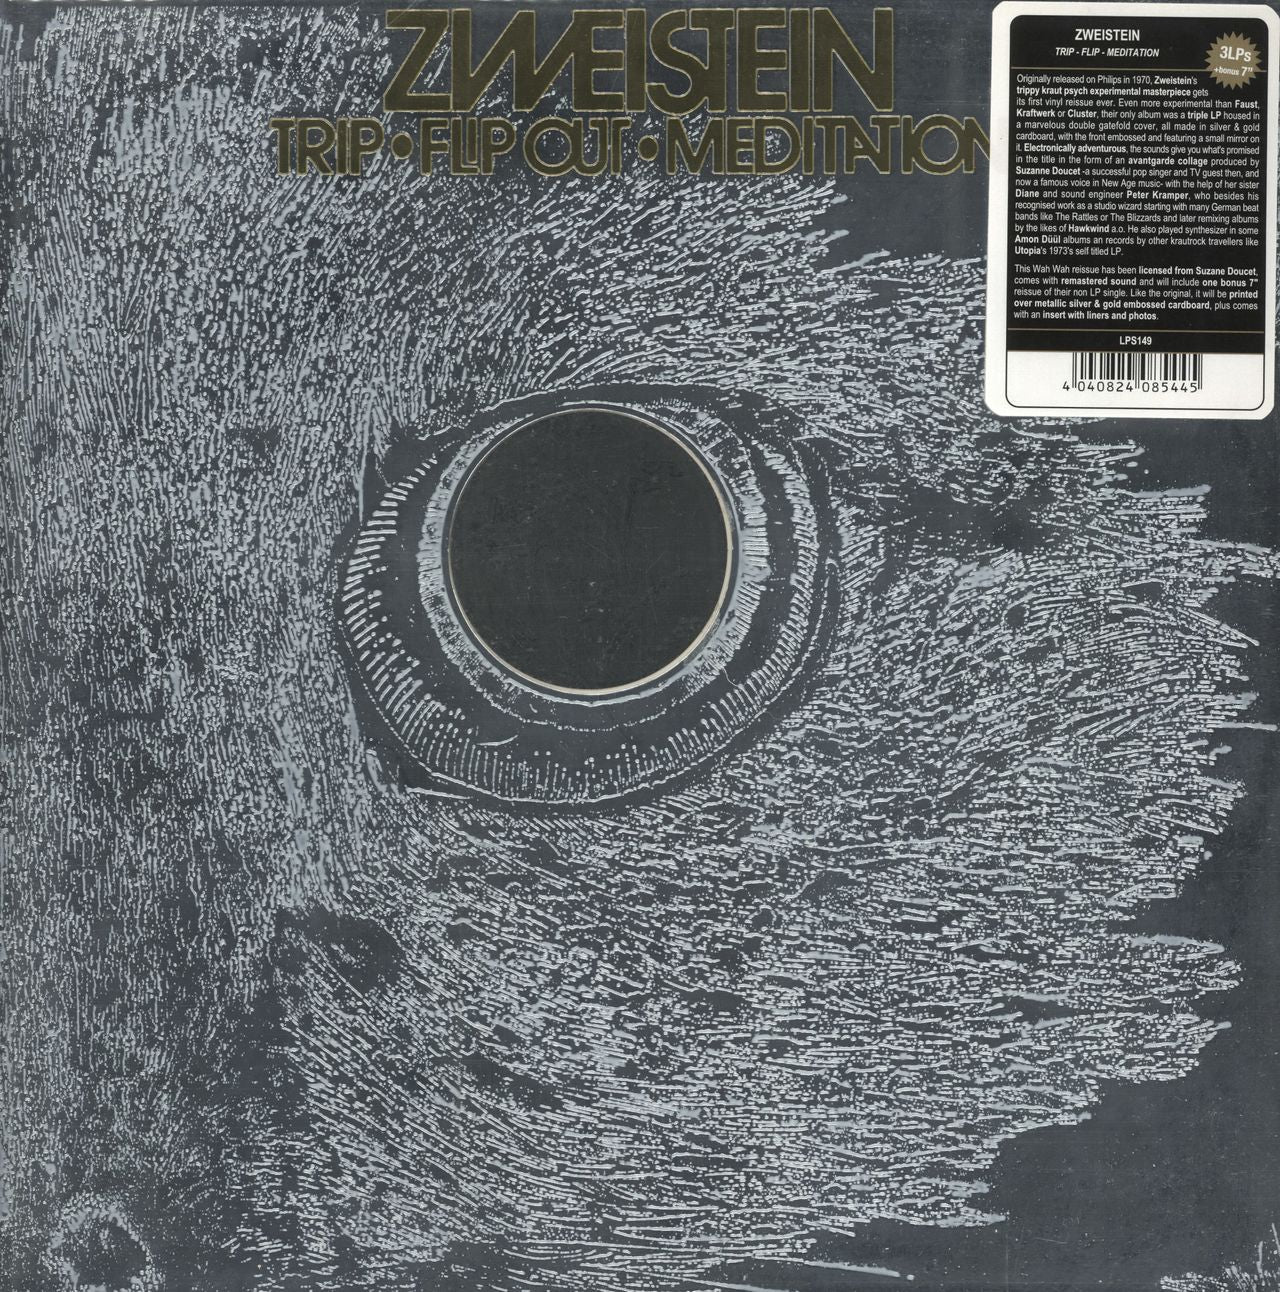 Zweistein Trip Flip Out Meditation + 7" + Hype Sticker Spanish 3-LP vinyl record set (Triple LP Album) LPS149